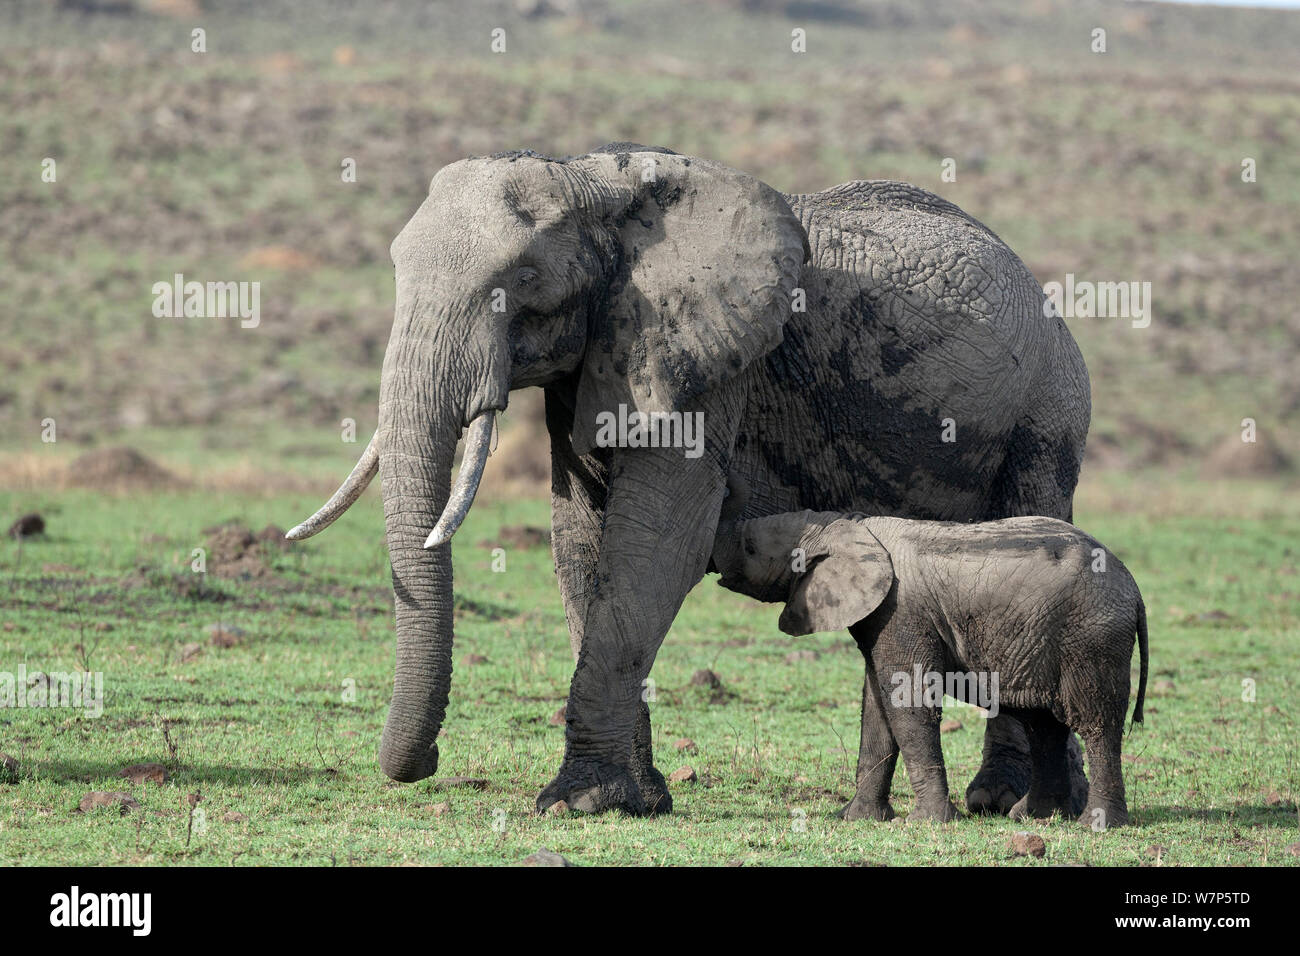 L'éléphant africain (Loxodonta africana), lait pour bébé de sa mère. Masai-Mara Game Reserve, Kenya. Banque D'Images